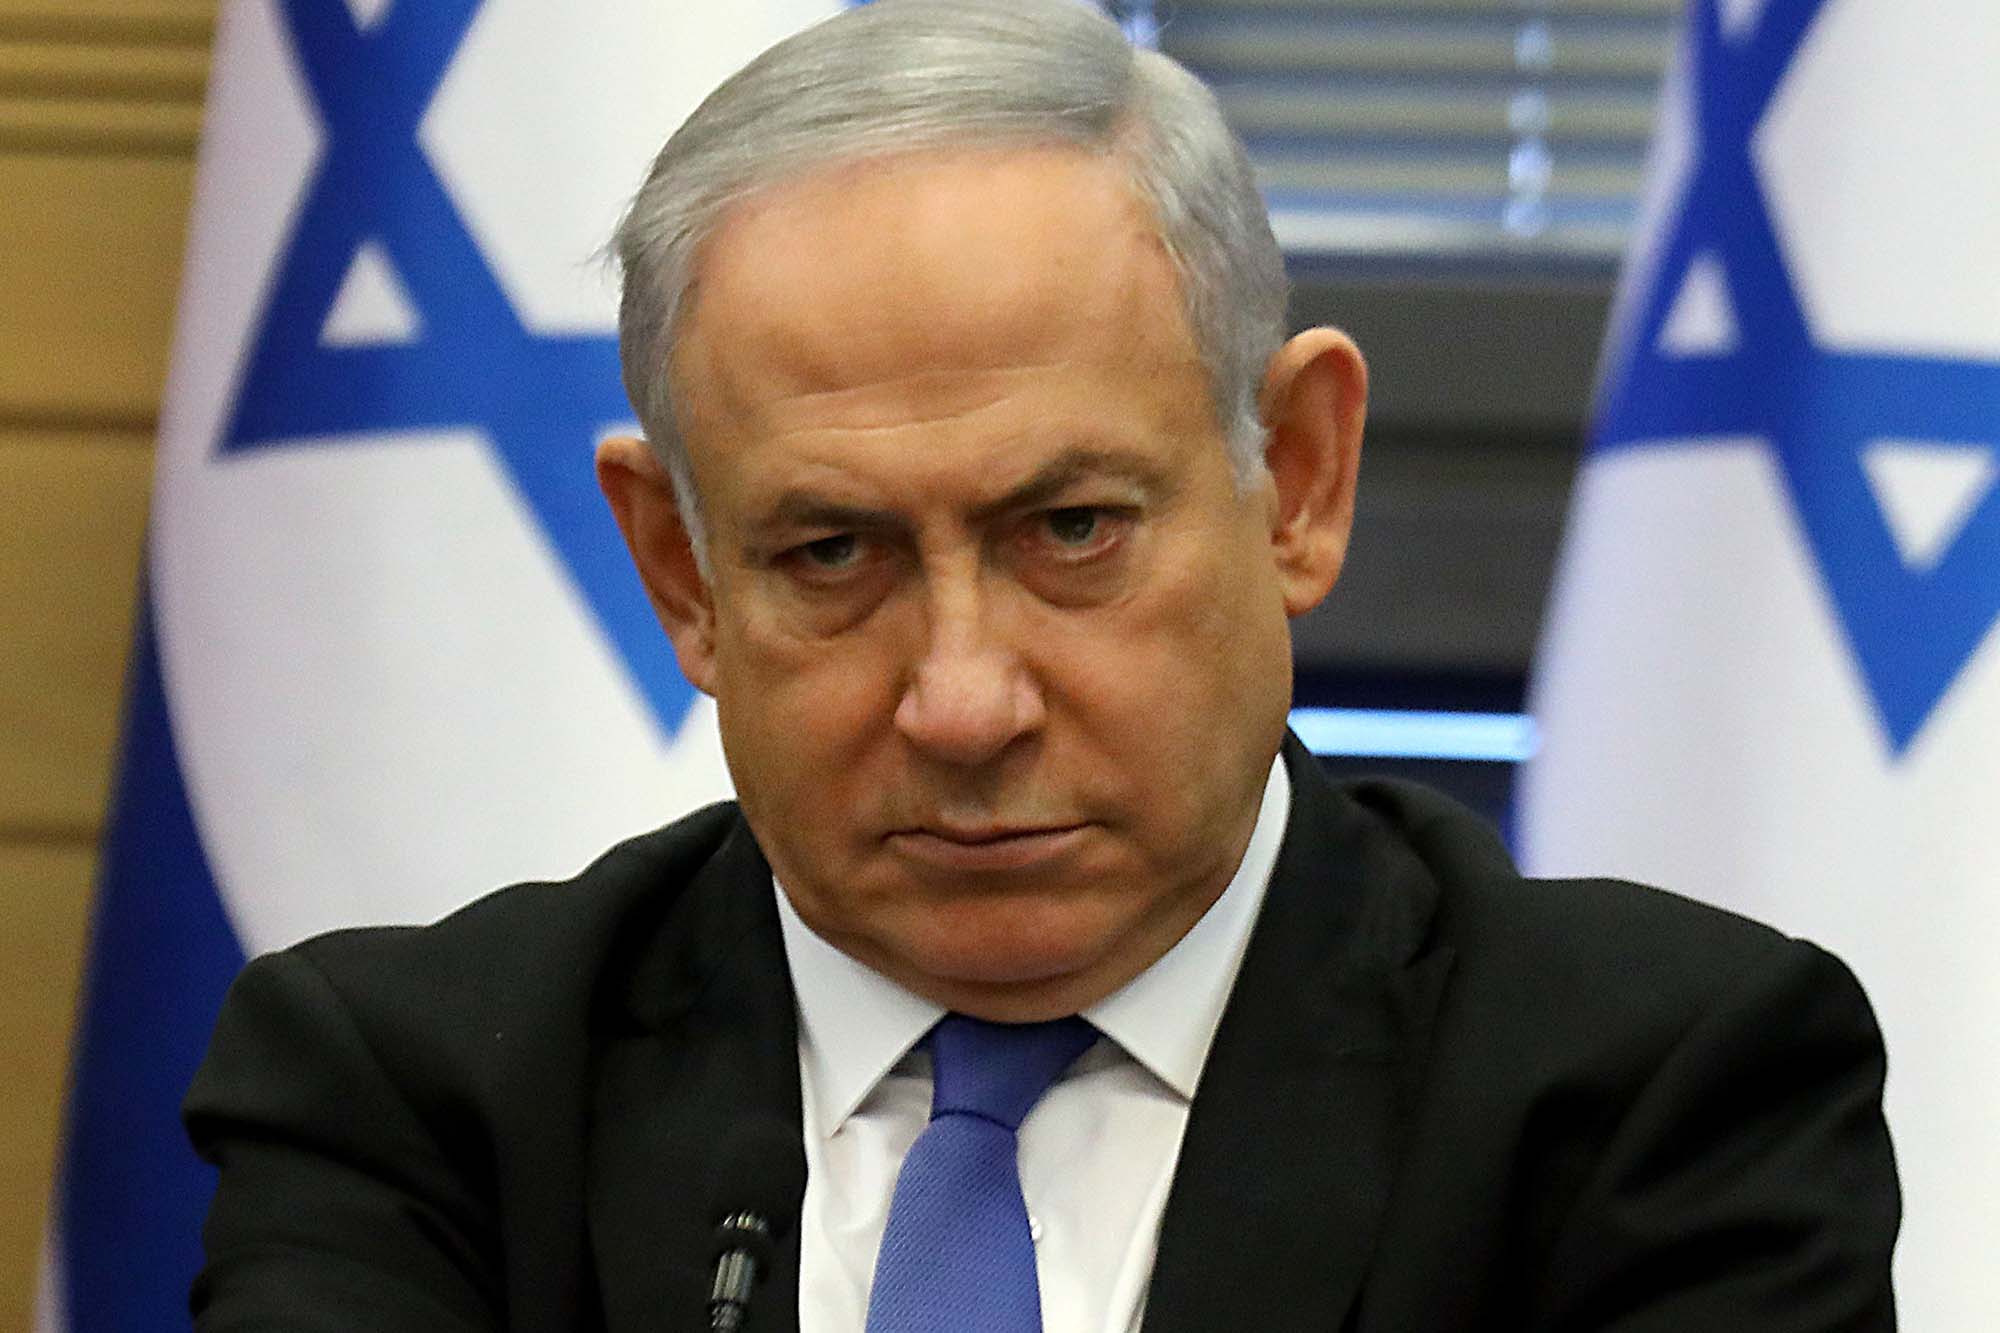 Izraelski premijer Benjamin Netanyahu hitno je 15. jula prebačen u bolnicu, ali je u dobrom stanju, saopćila je njegova kancelarija.